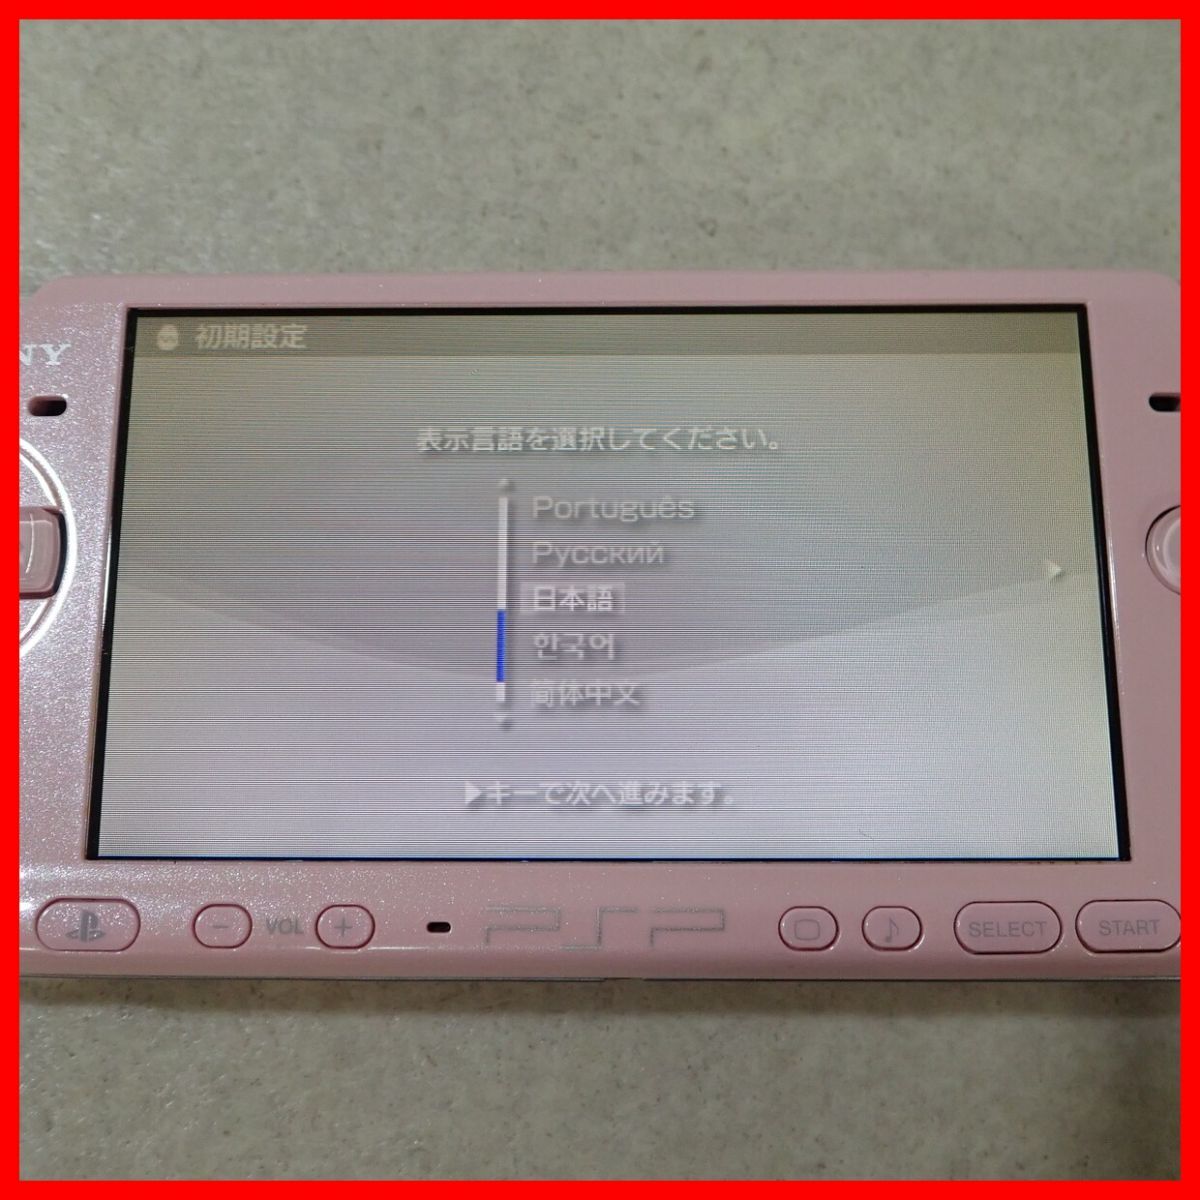  рабочий товар PSP PlayStation портативный bro Sam розовый корпус PSP-3000 SONY Sony коробка мнение есть [10